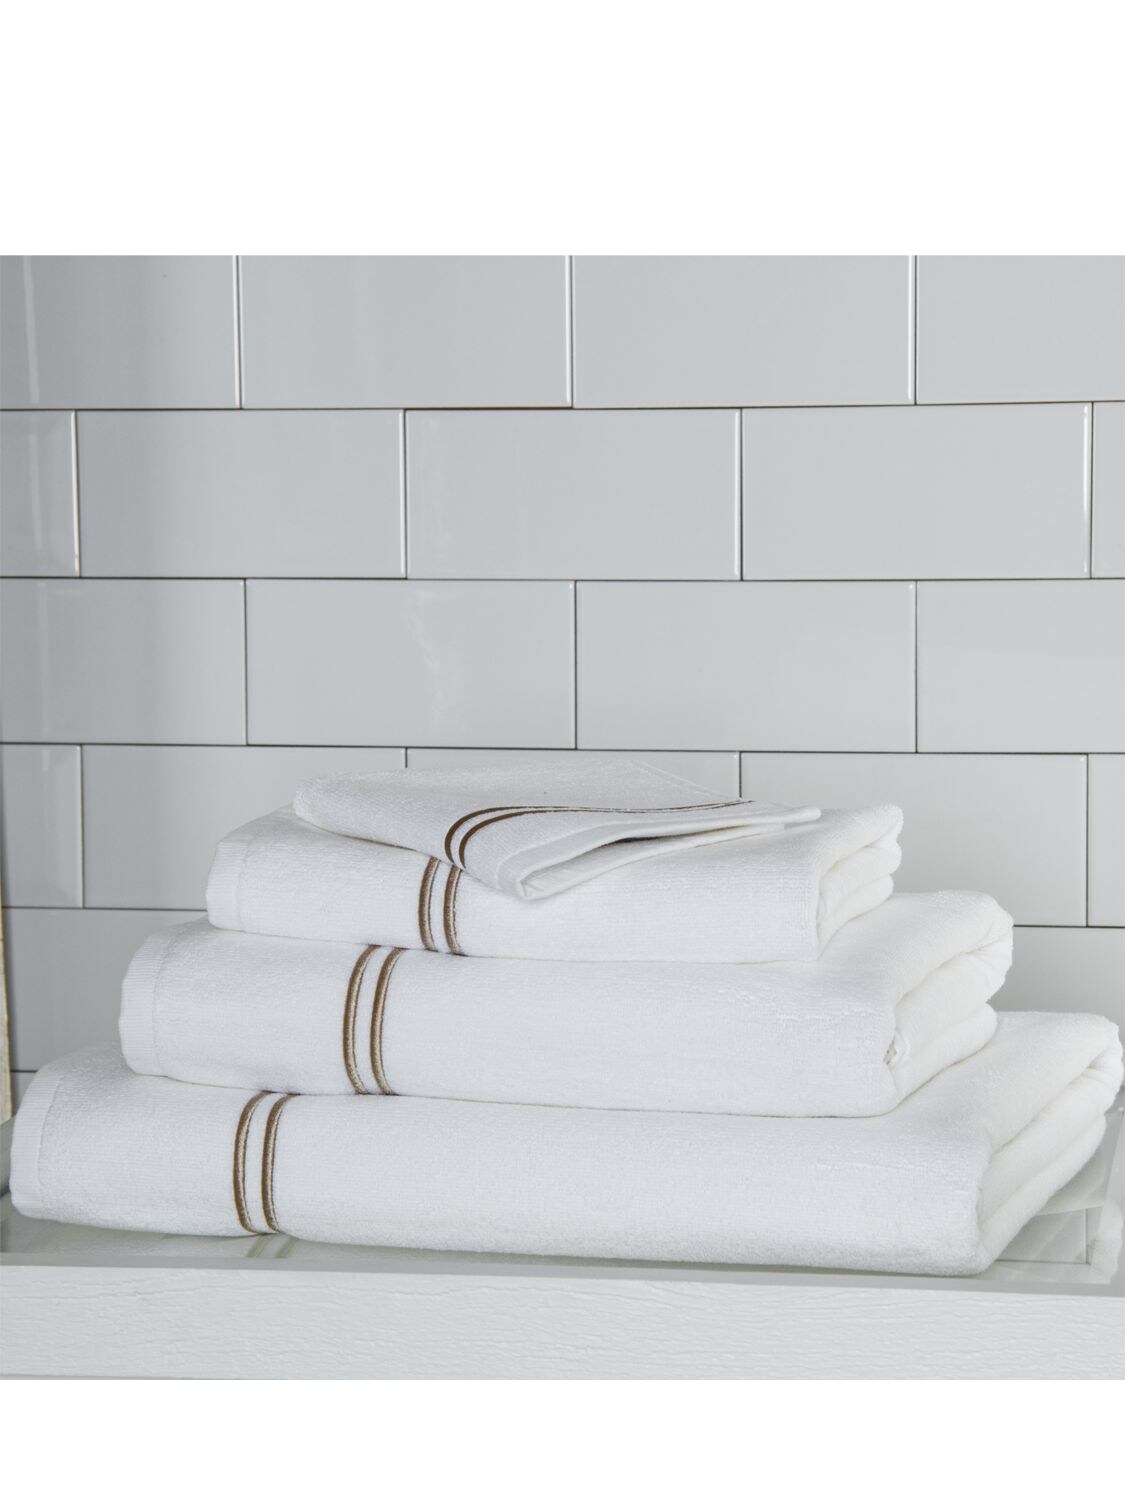 Frette Classic Hand Towel - White Khaki